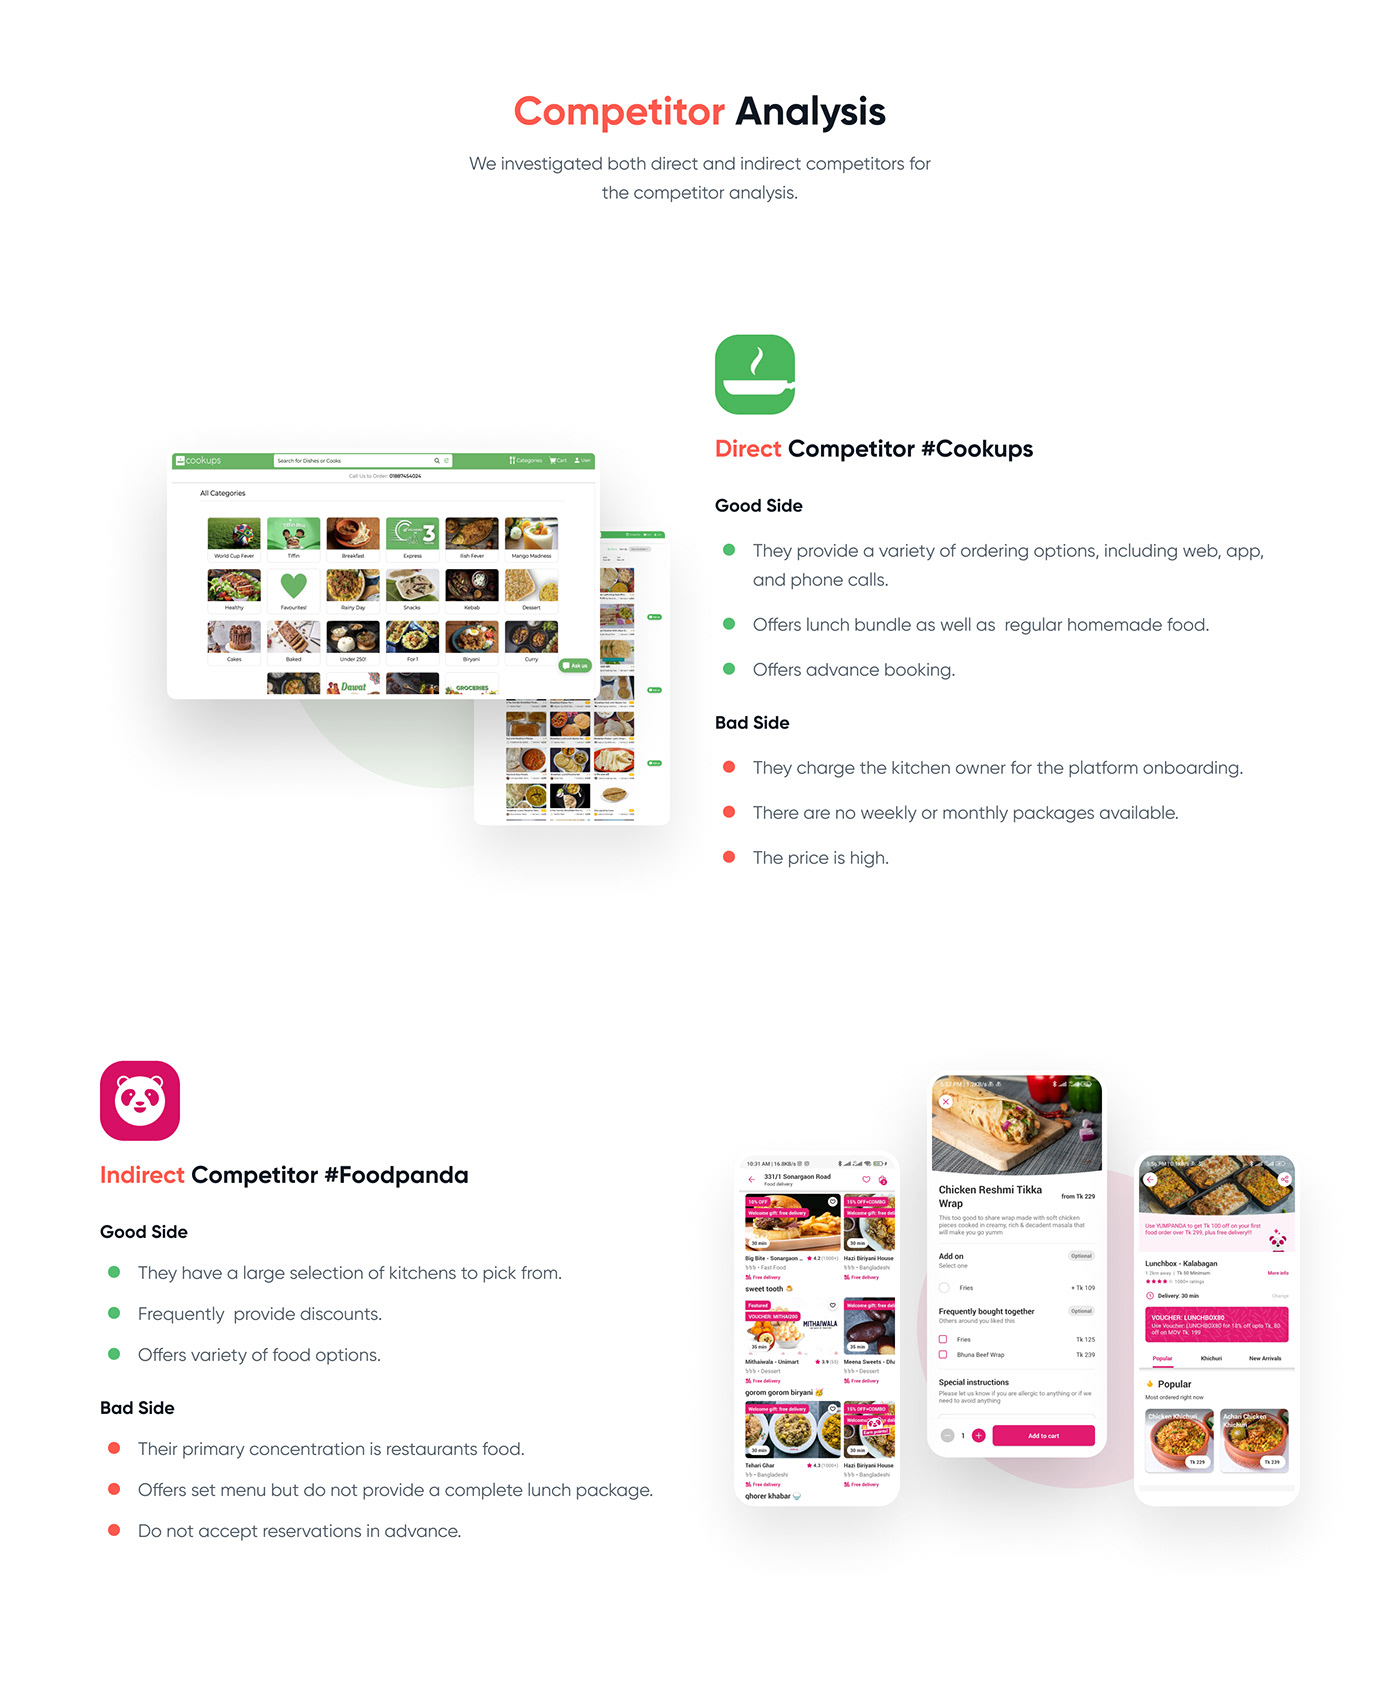 delivery app design food delivery lunch Mobile app restaurant UI UI/UX Case Study TEAMWORK